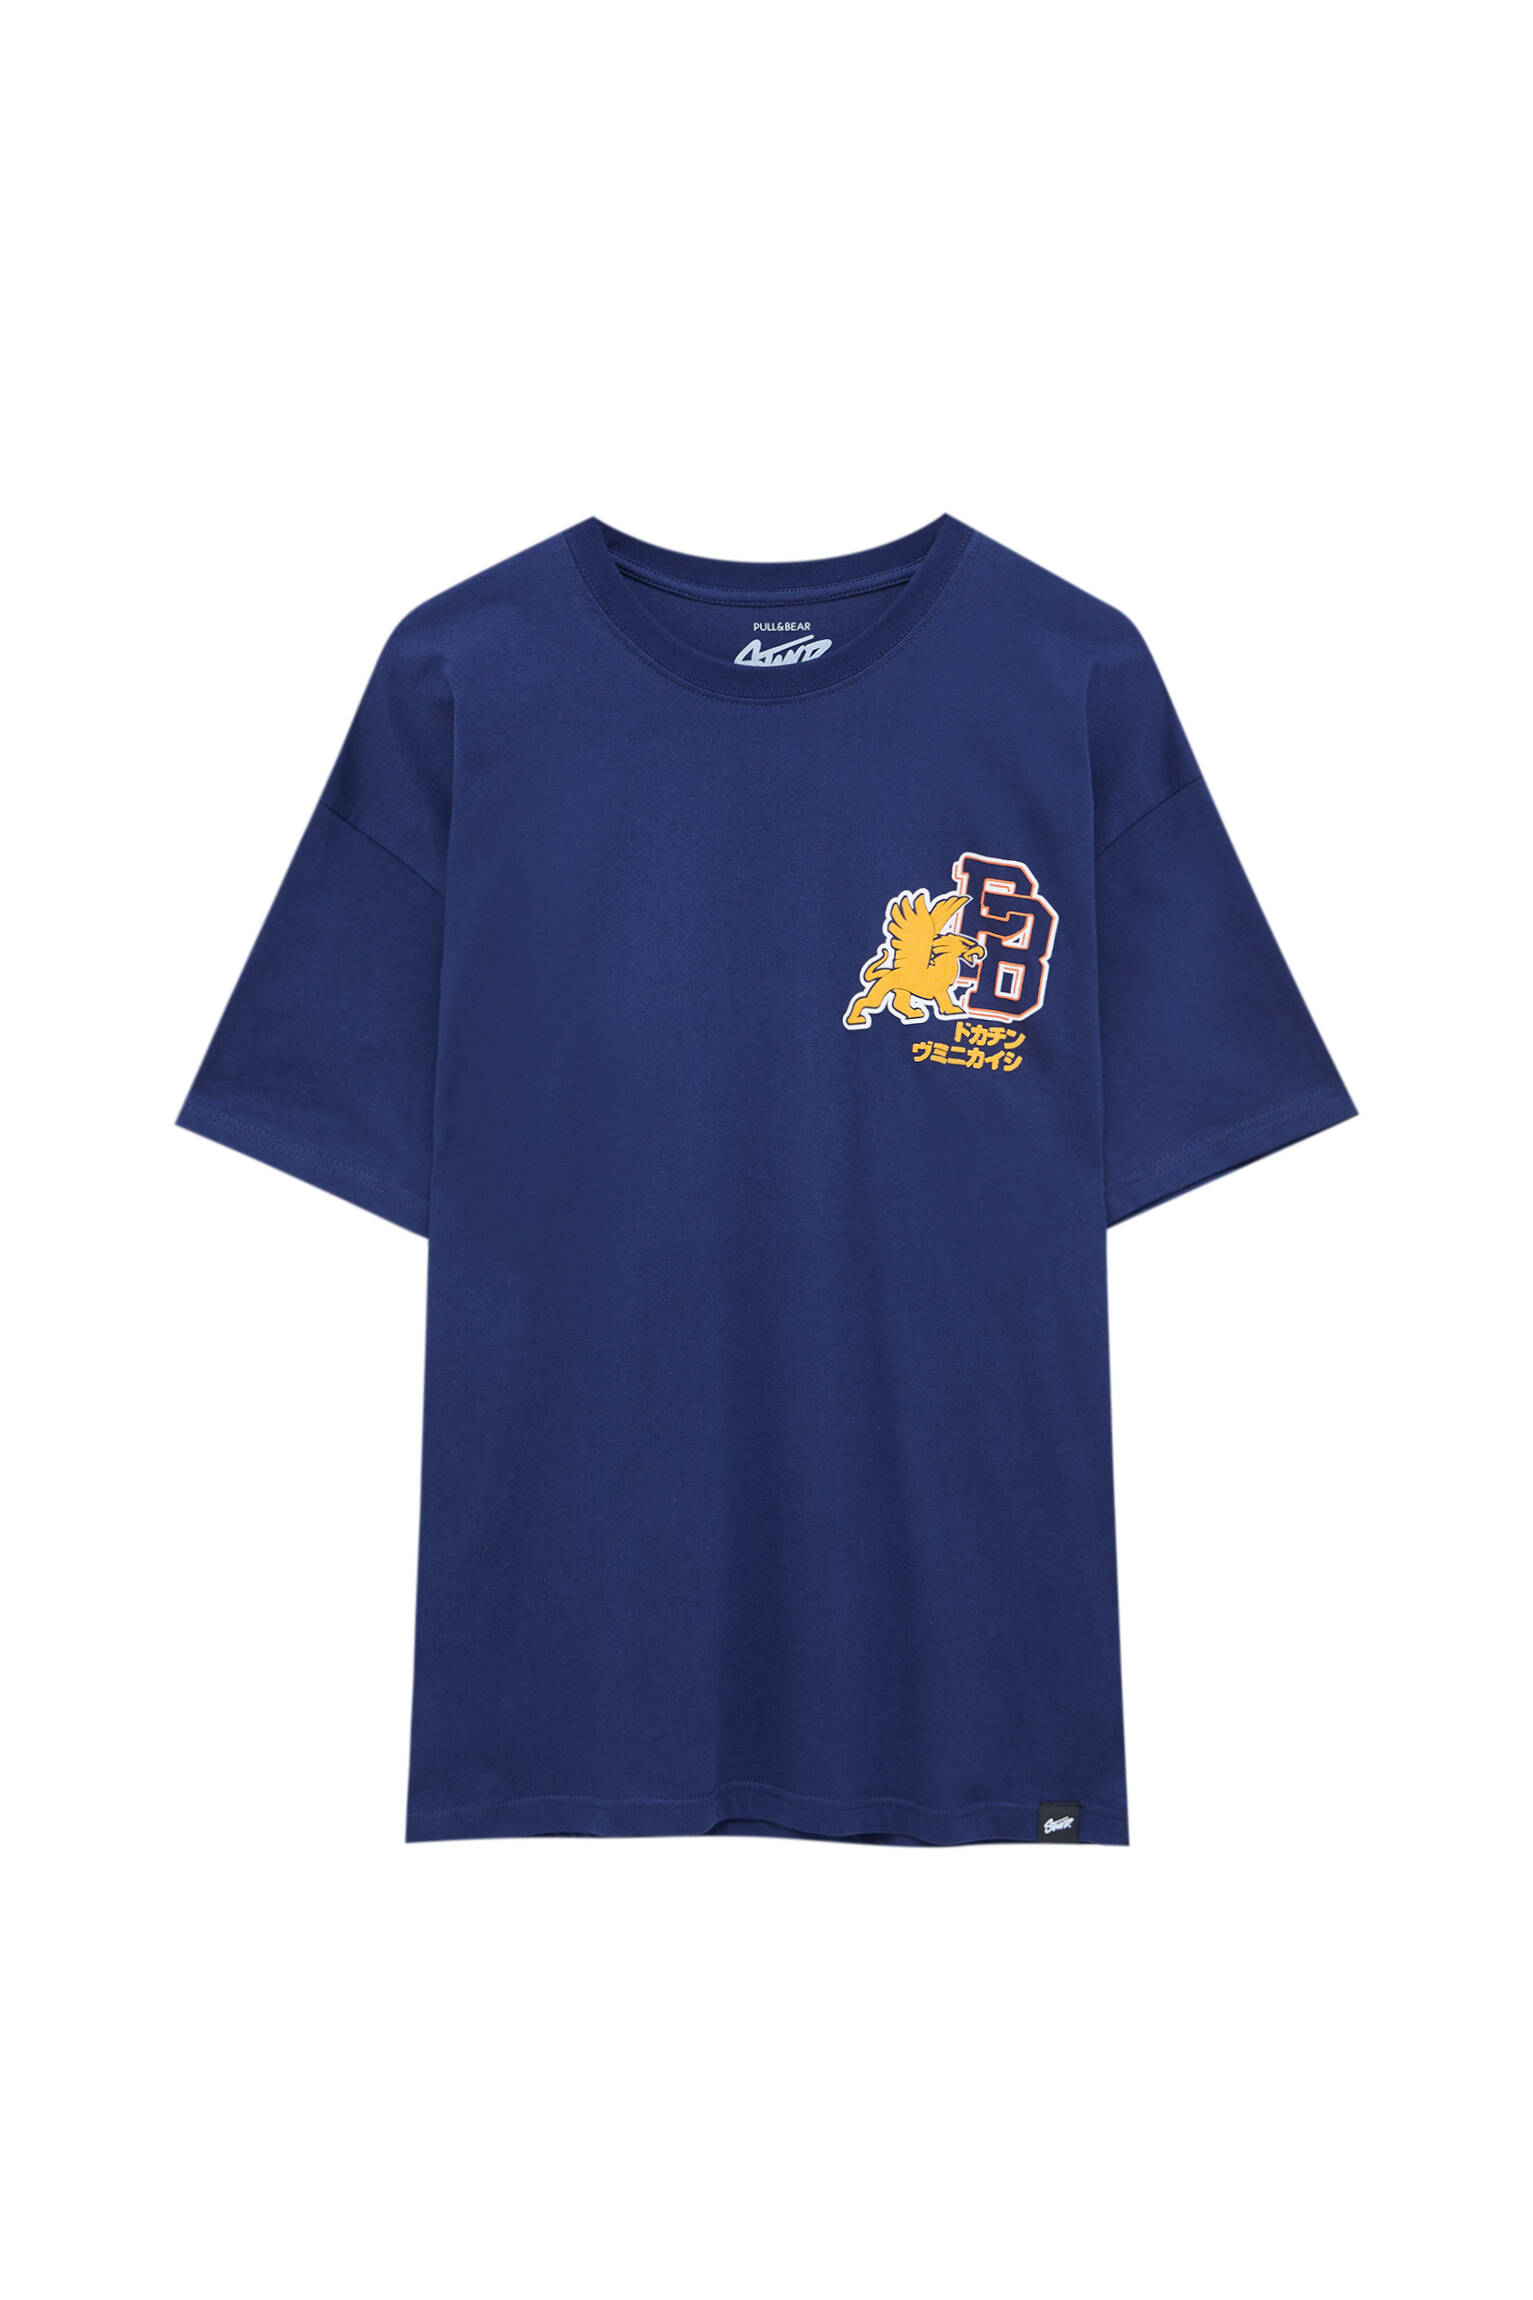 Pull&bear Homme T-shirt Style Universitaire Bleu Foncé 100 % Coton Avec Détail Sur Le Devant. Manches Courtes Et Col Rond. Bleu Marine Xl